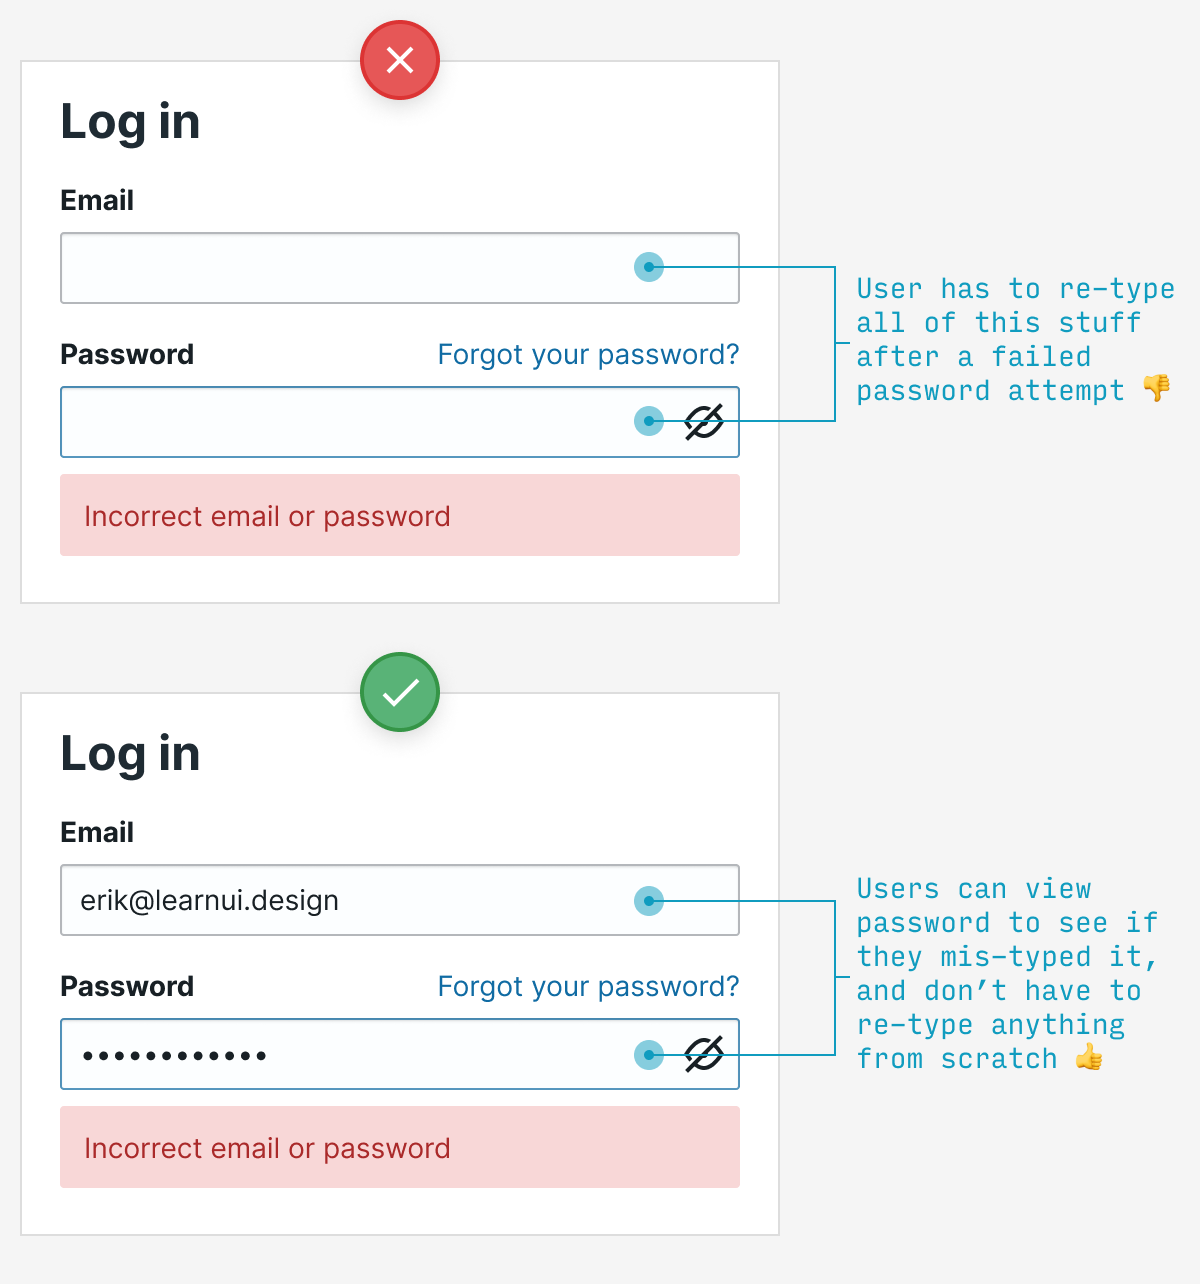 在错误的密码 UX 模式后记住密码尝试